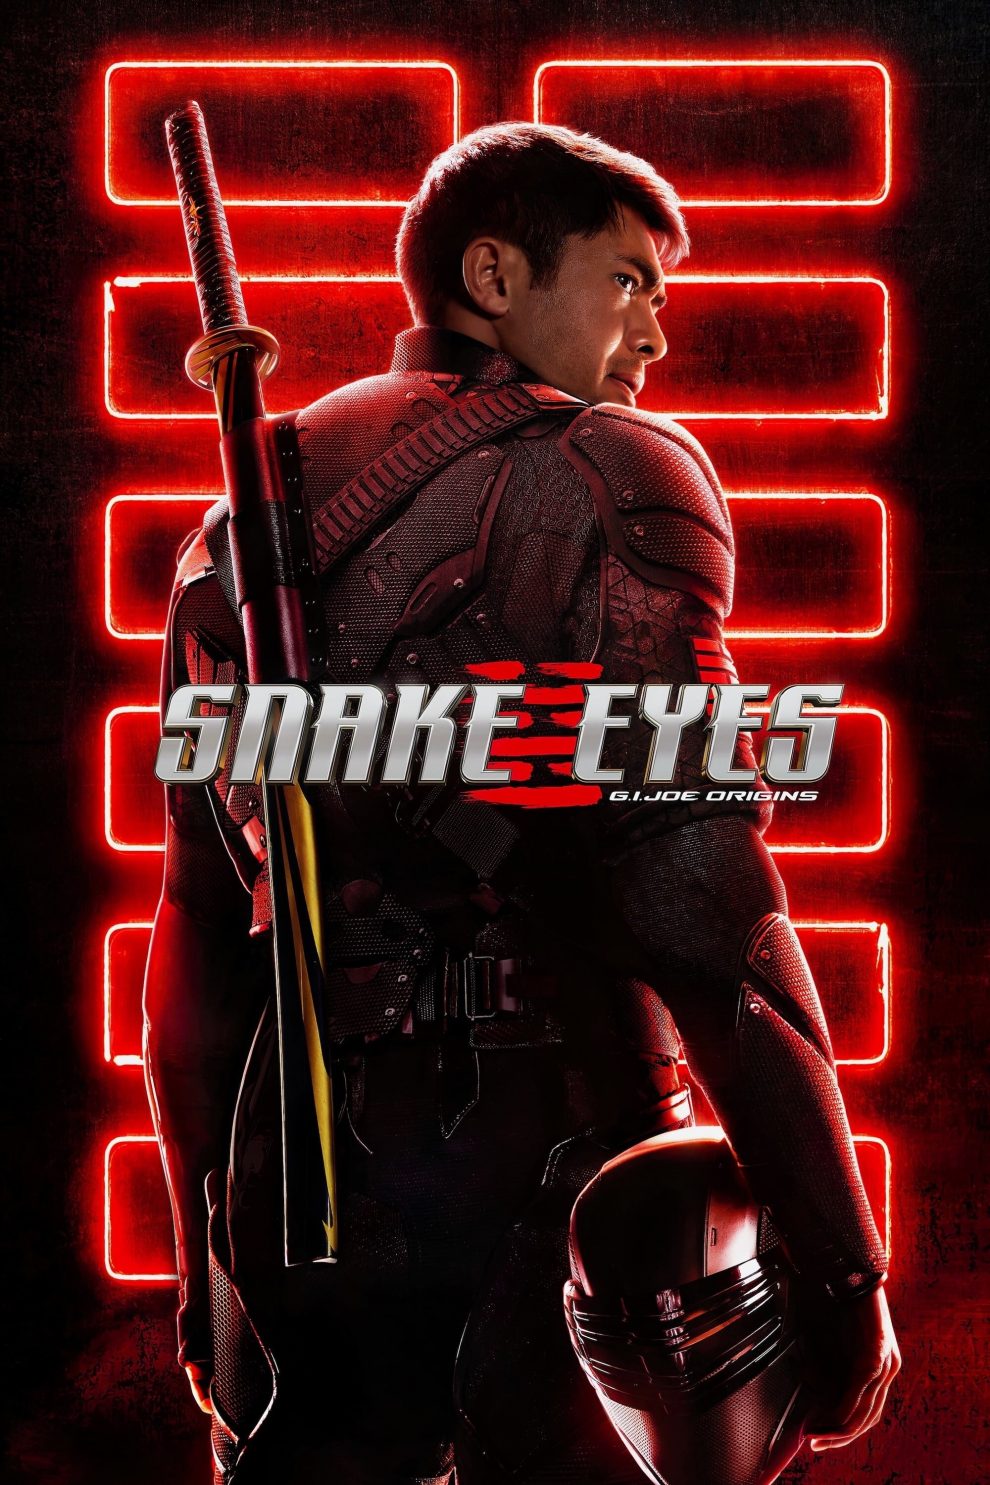 Poster for the movie "Snake Eyes: G.I. Joe Origins"